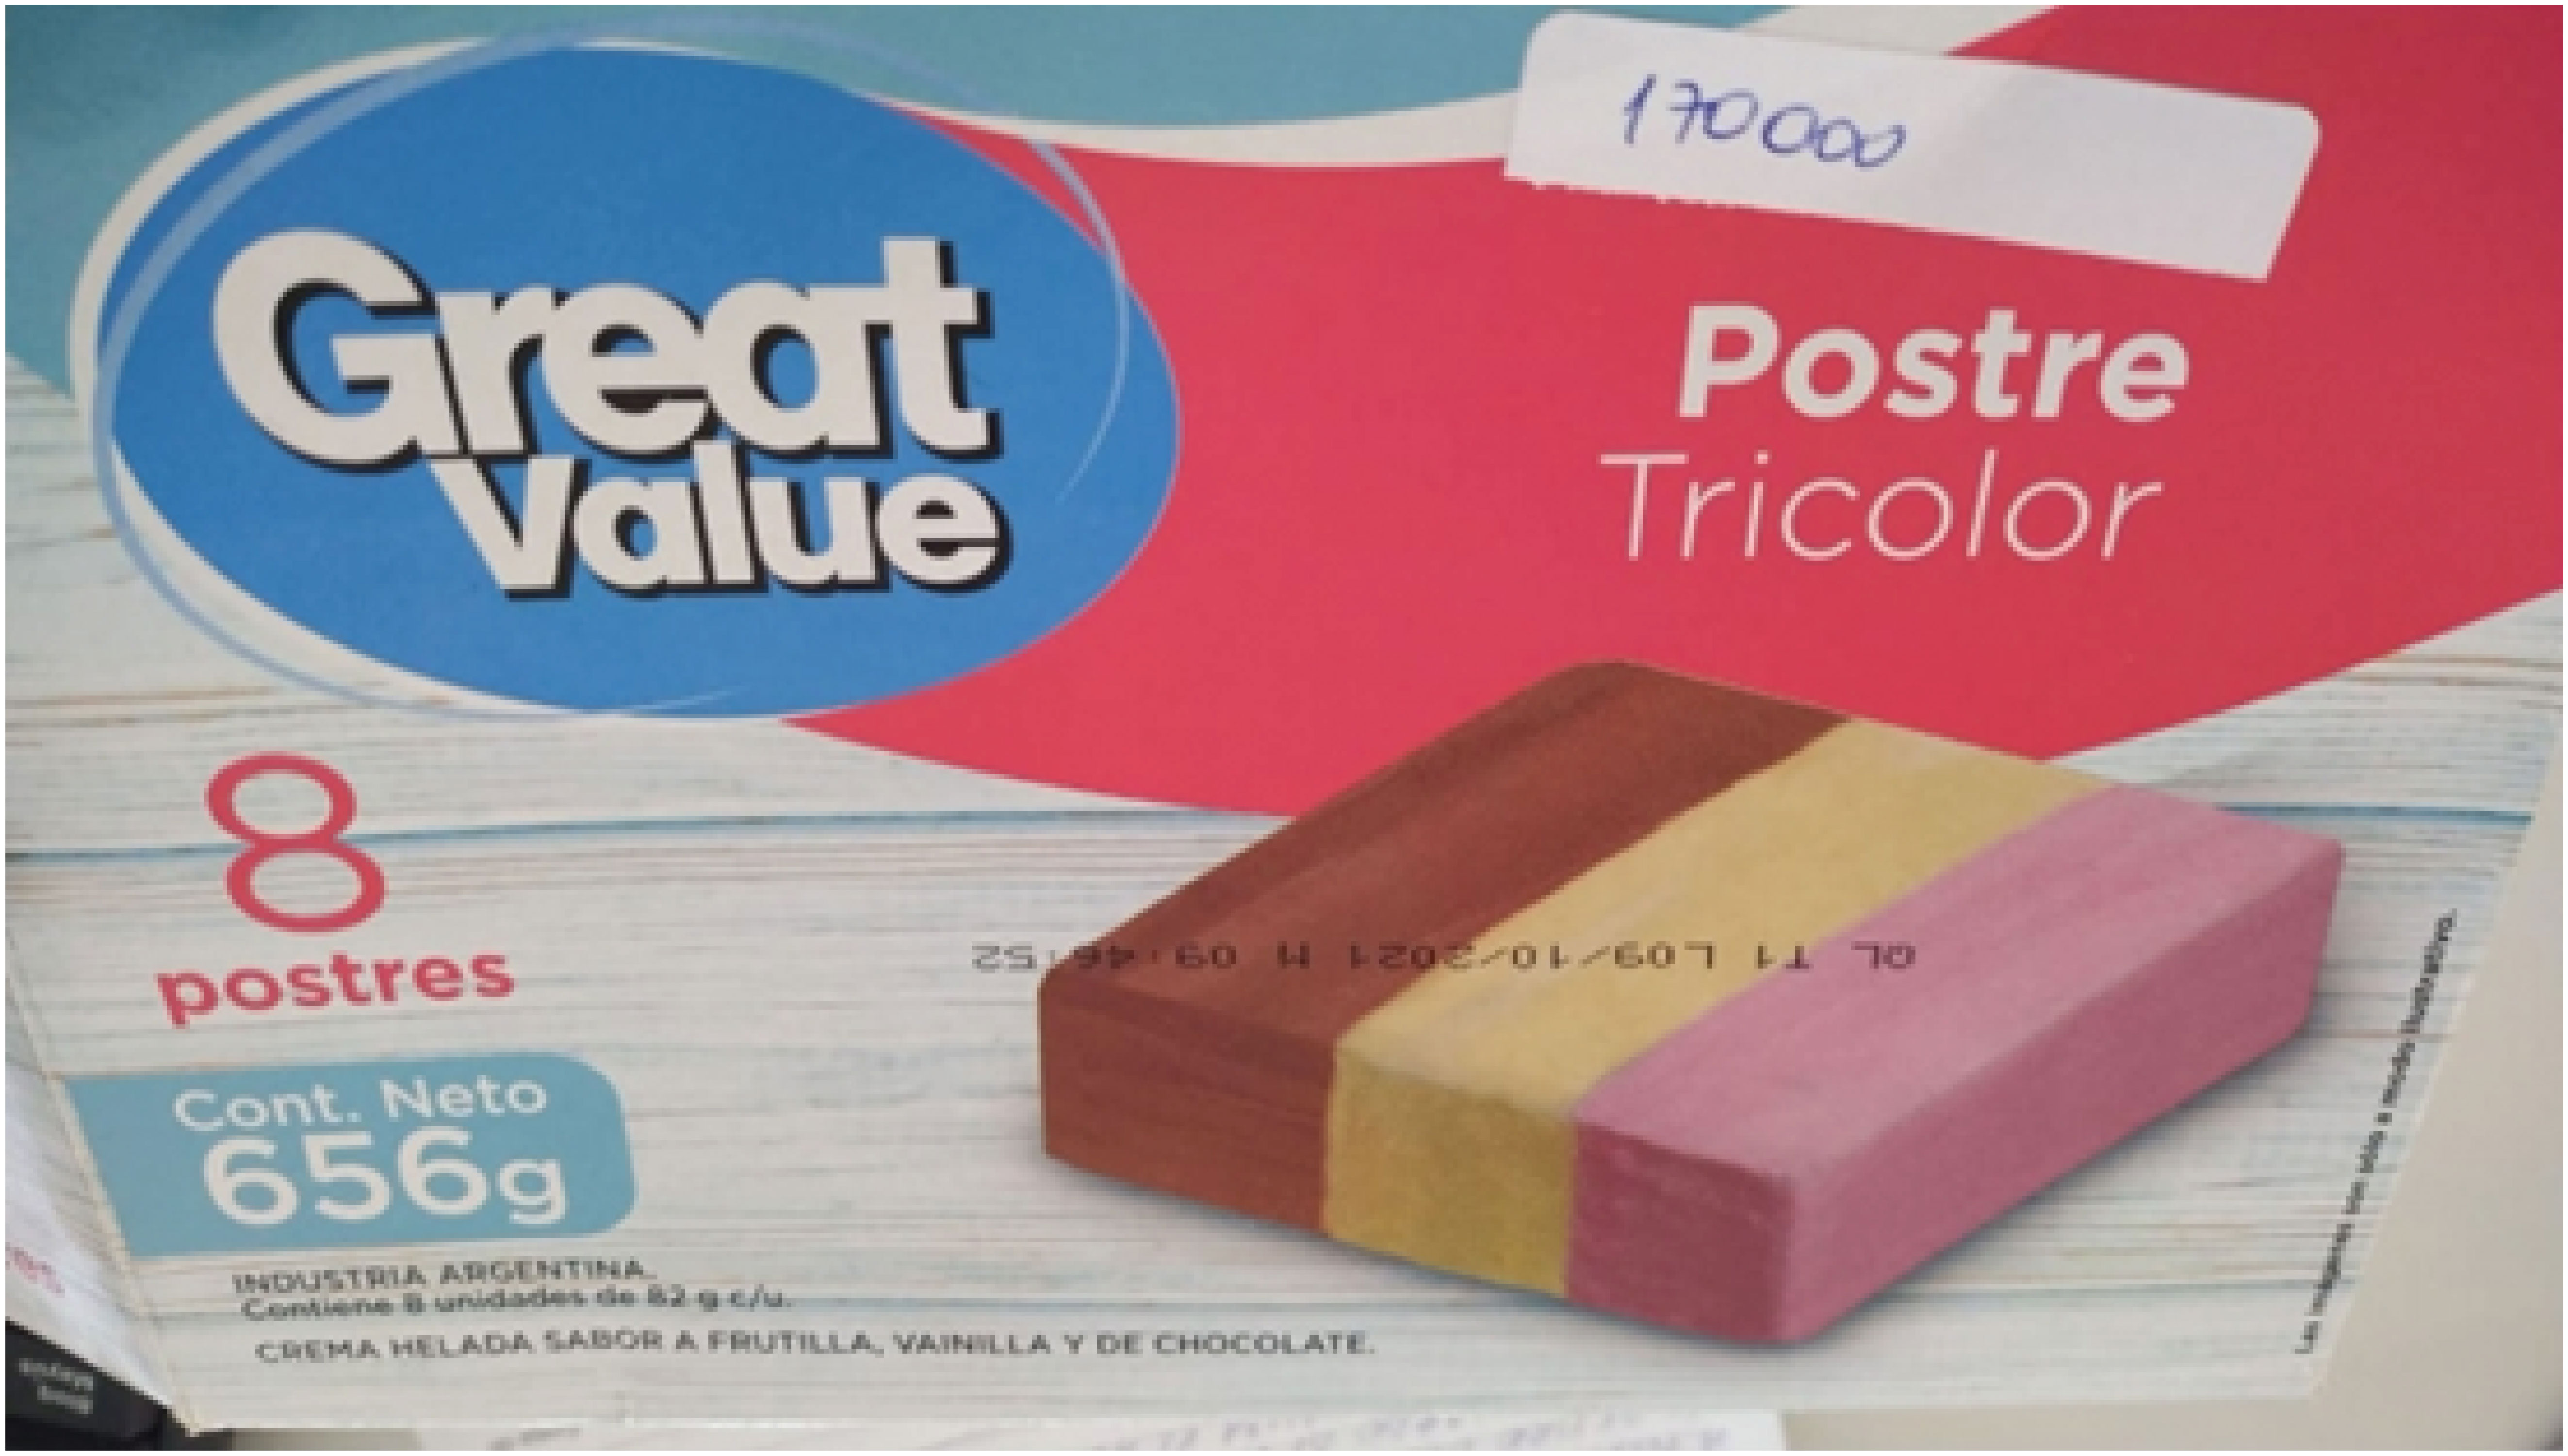 Rótulo helado tricolor marca “Great Value”